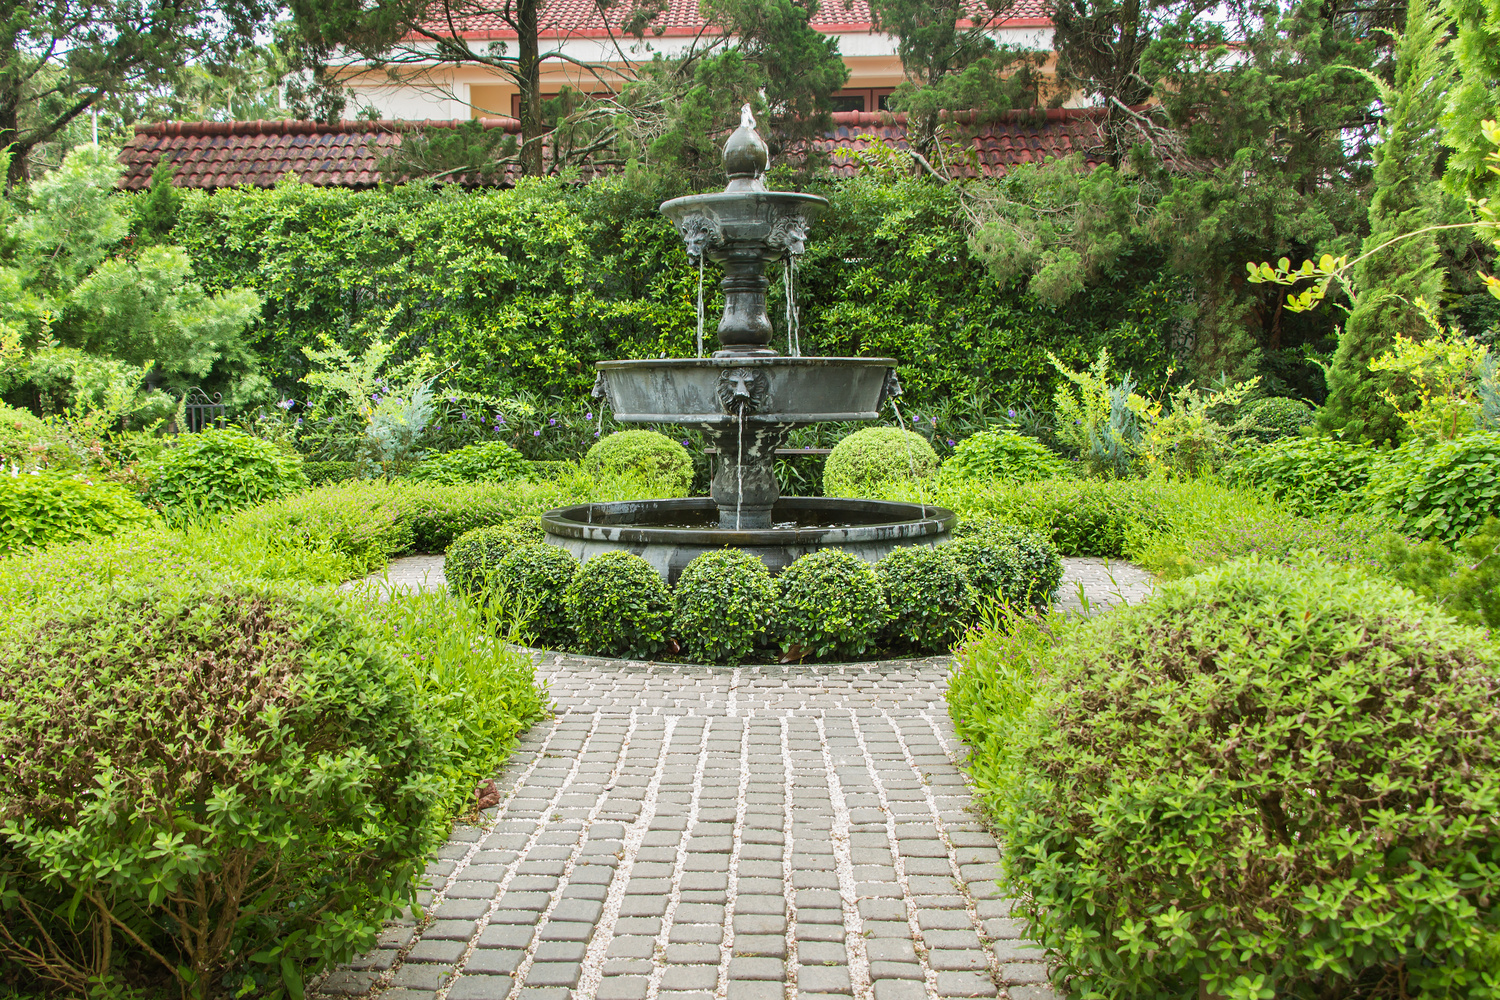 Installer une fontaine dans son jardin à Toulouse